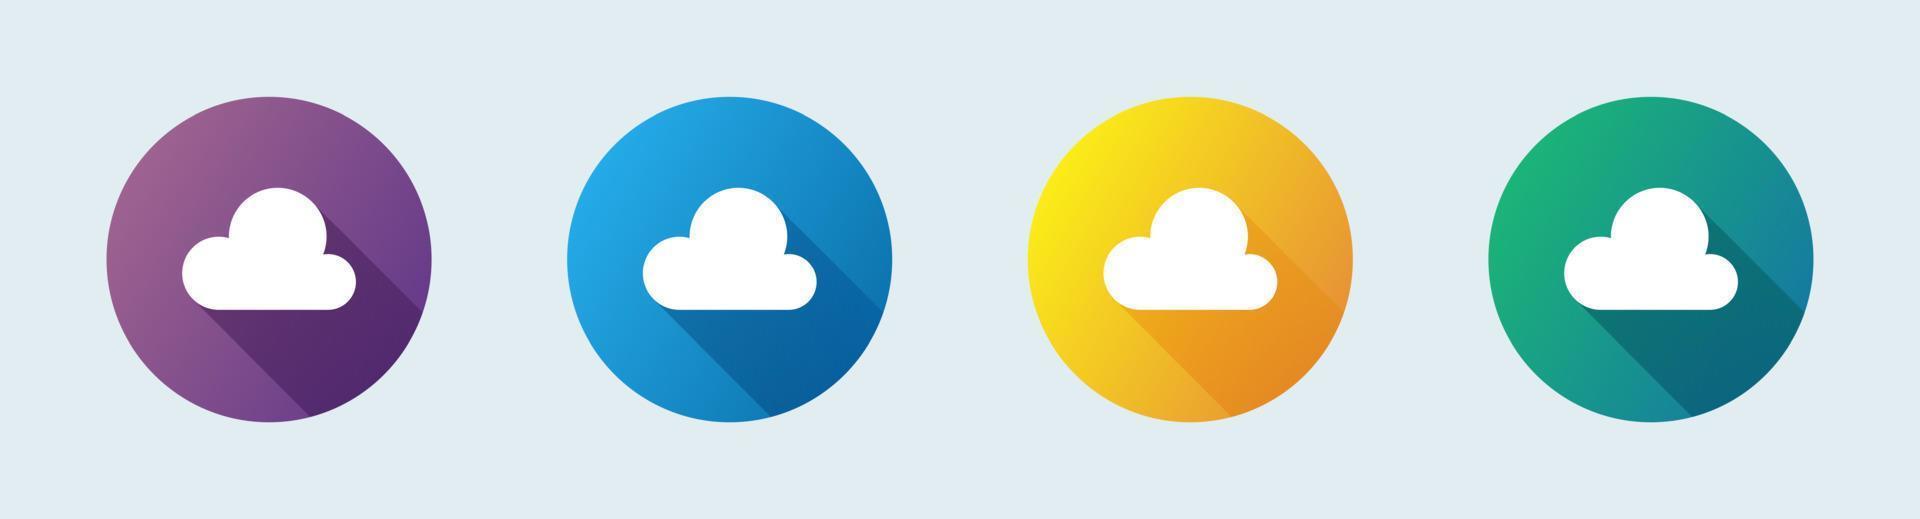 Cloud Drive Storage oder Cumulus Cloud Flat Icon. Vektorsymbol für Online-Speicher. vektor